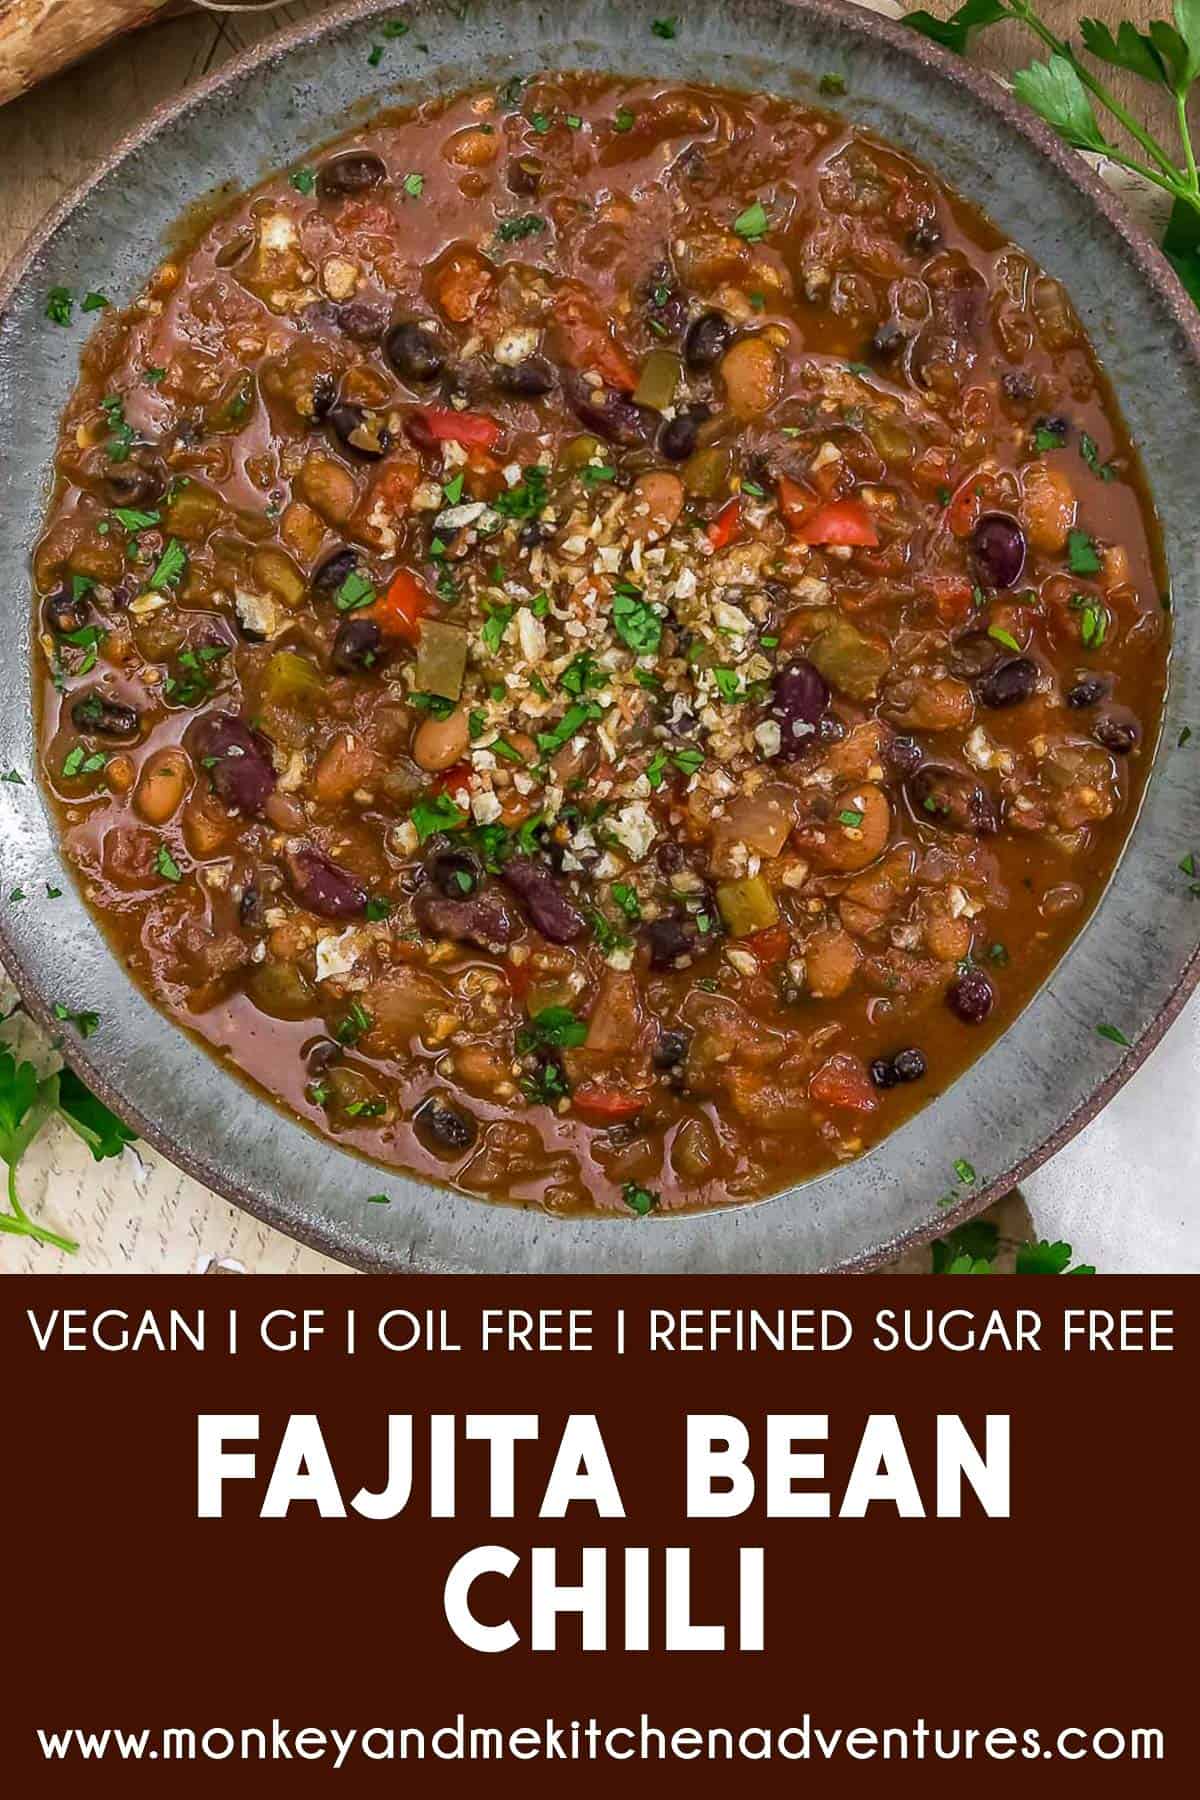 Fajita Bean Chili with text description